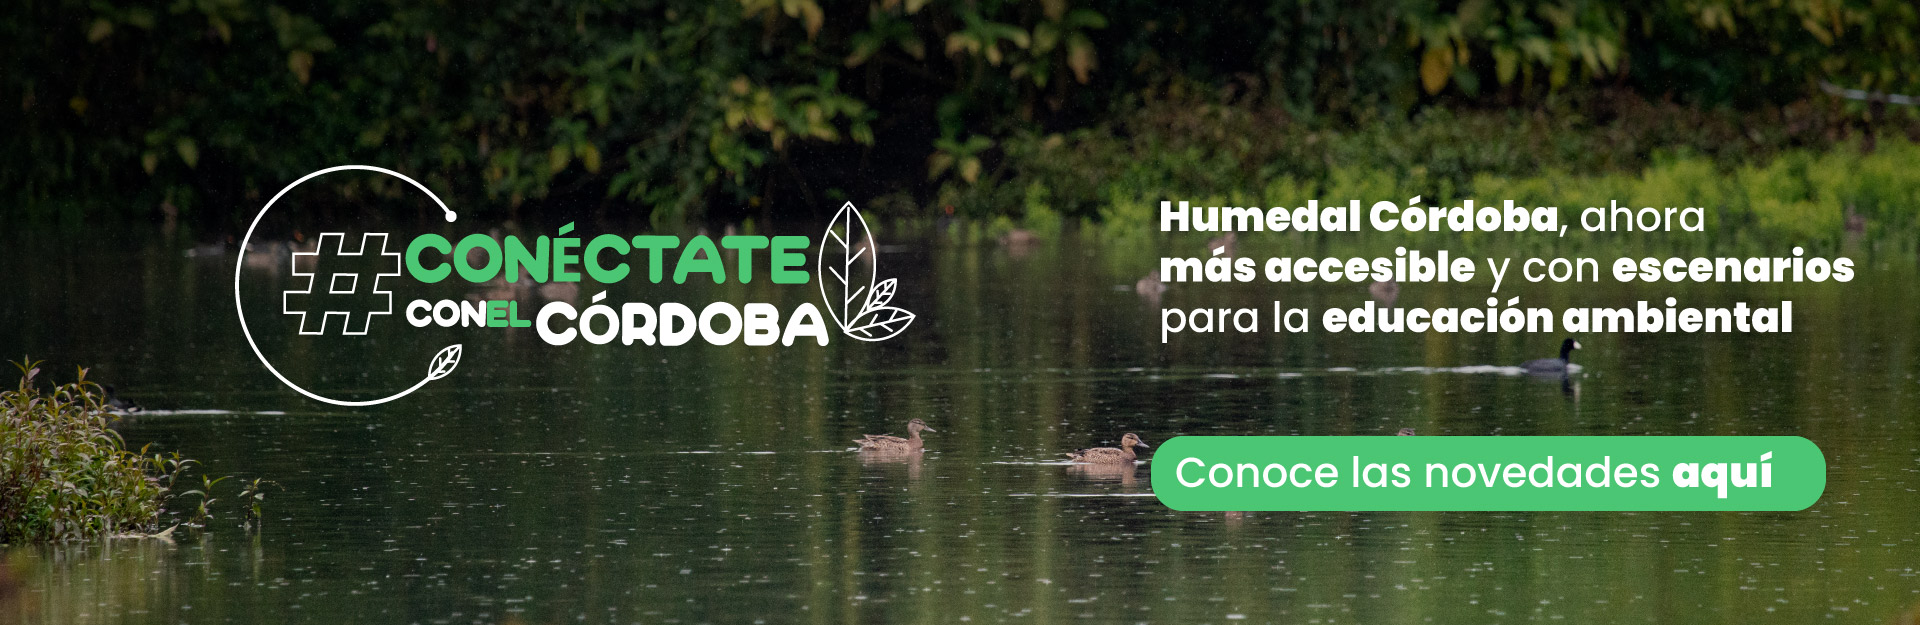 Humedal Córdoba, ahora más accesible y con escenarios para la educación ambiental